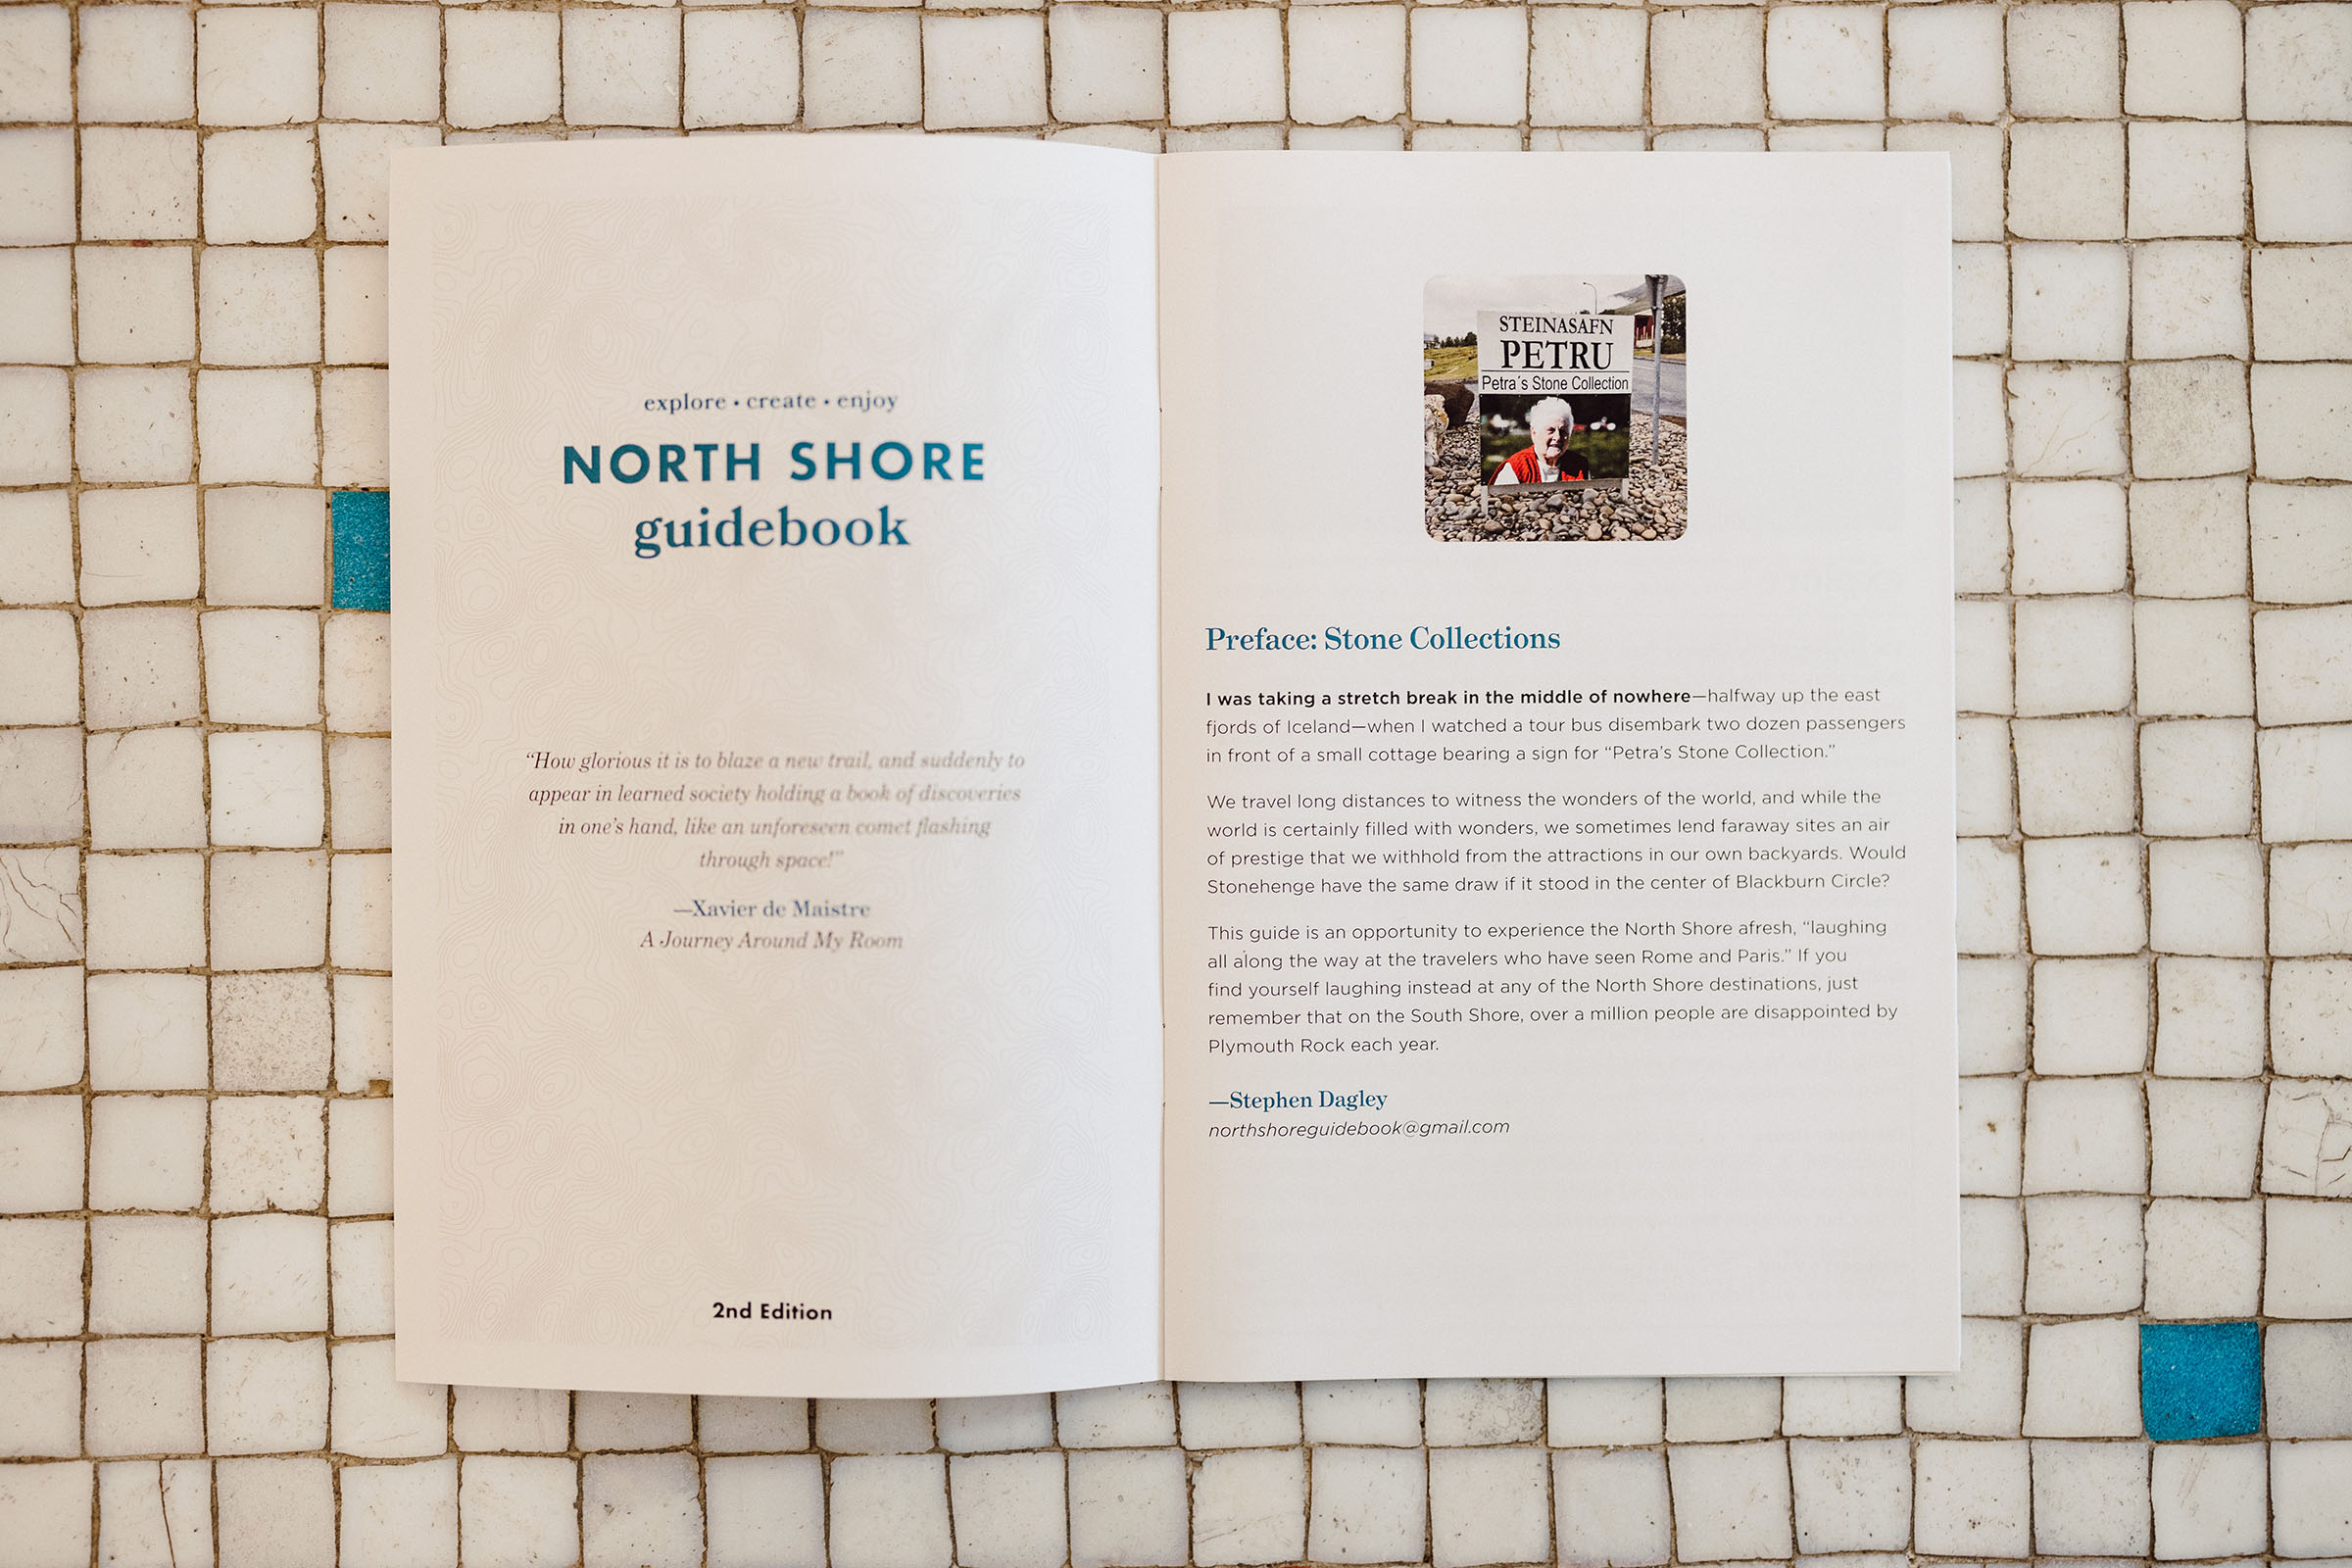 North Shore Guidebook preface